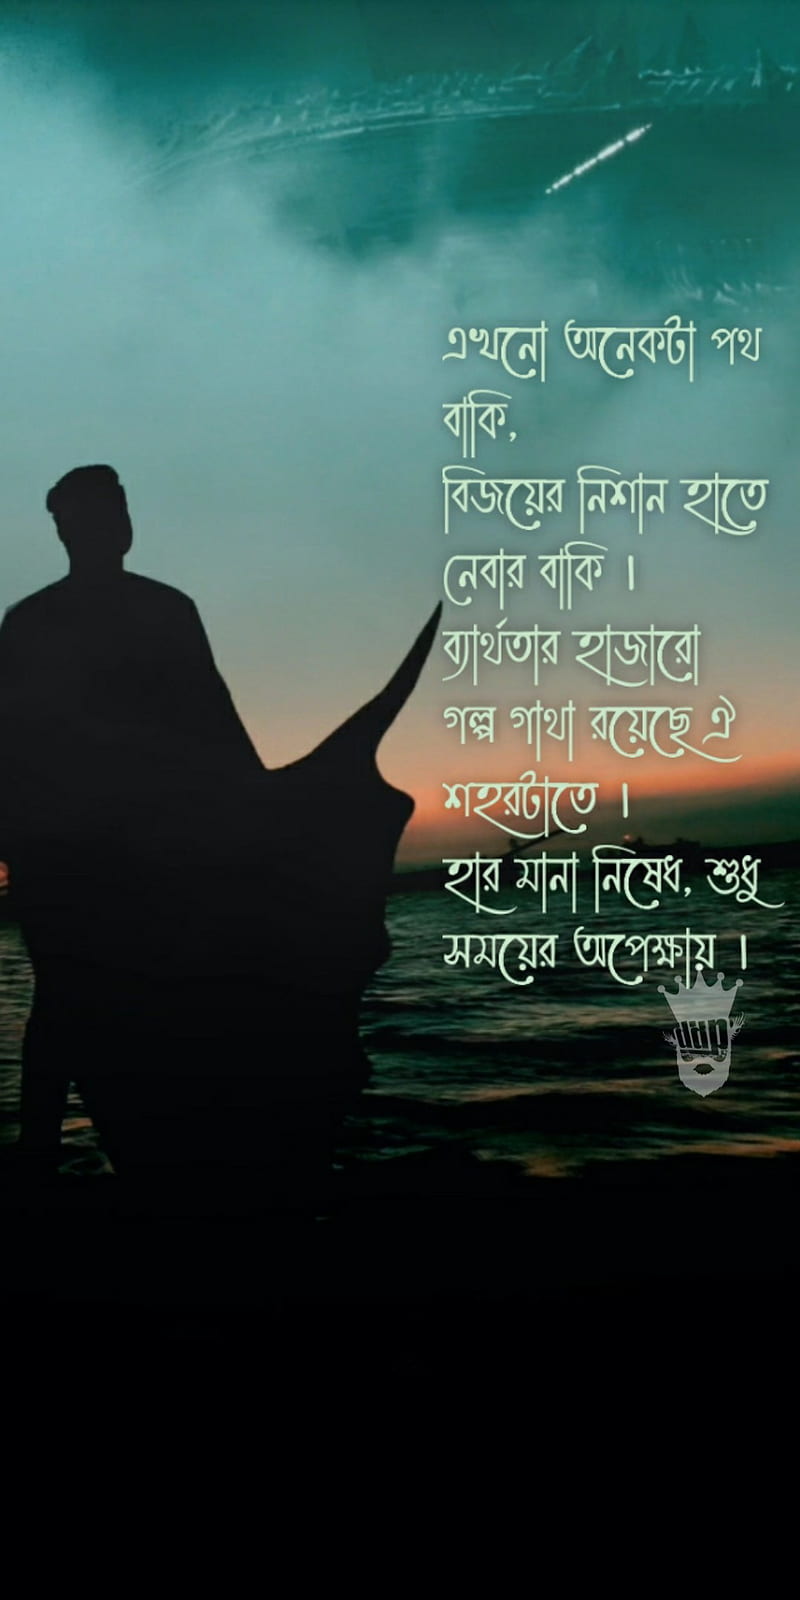 Broken heart quotes in bengali